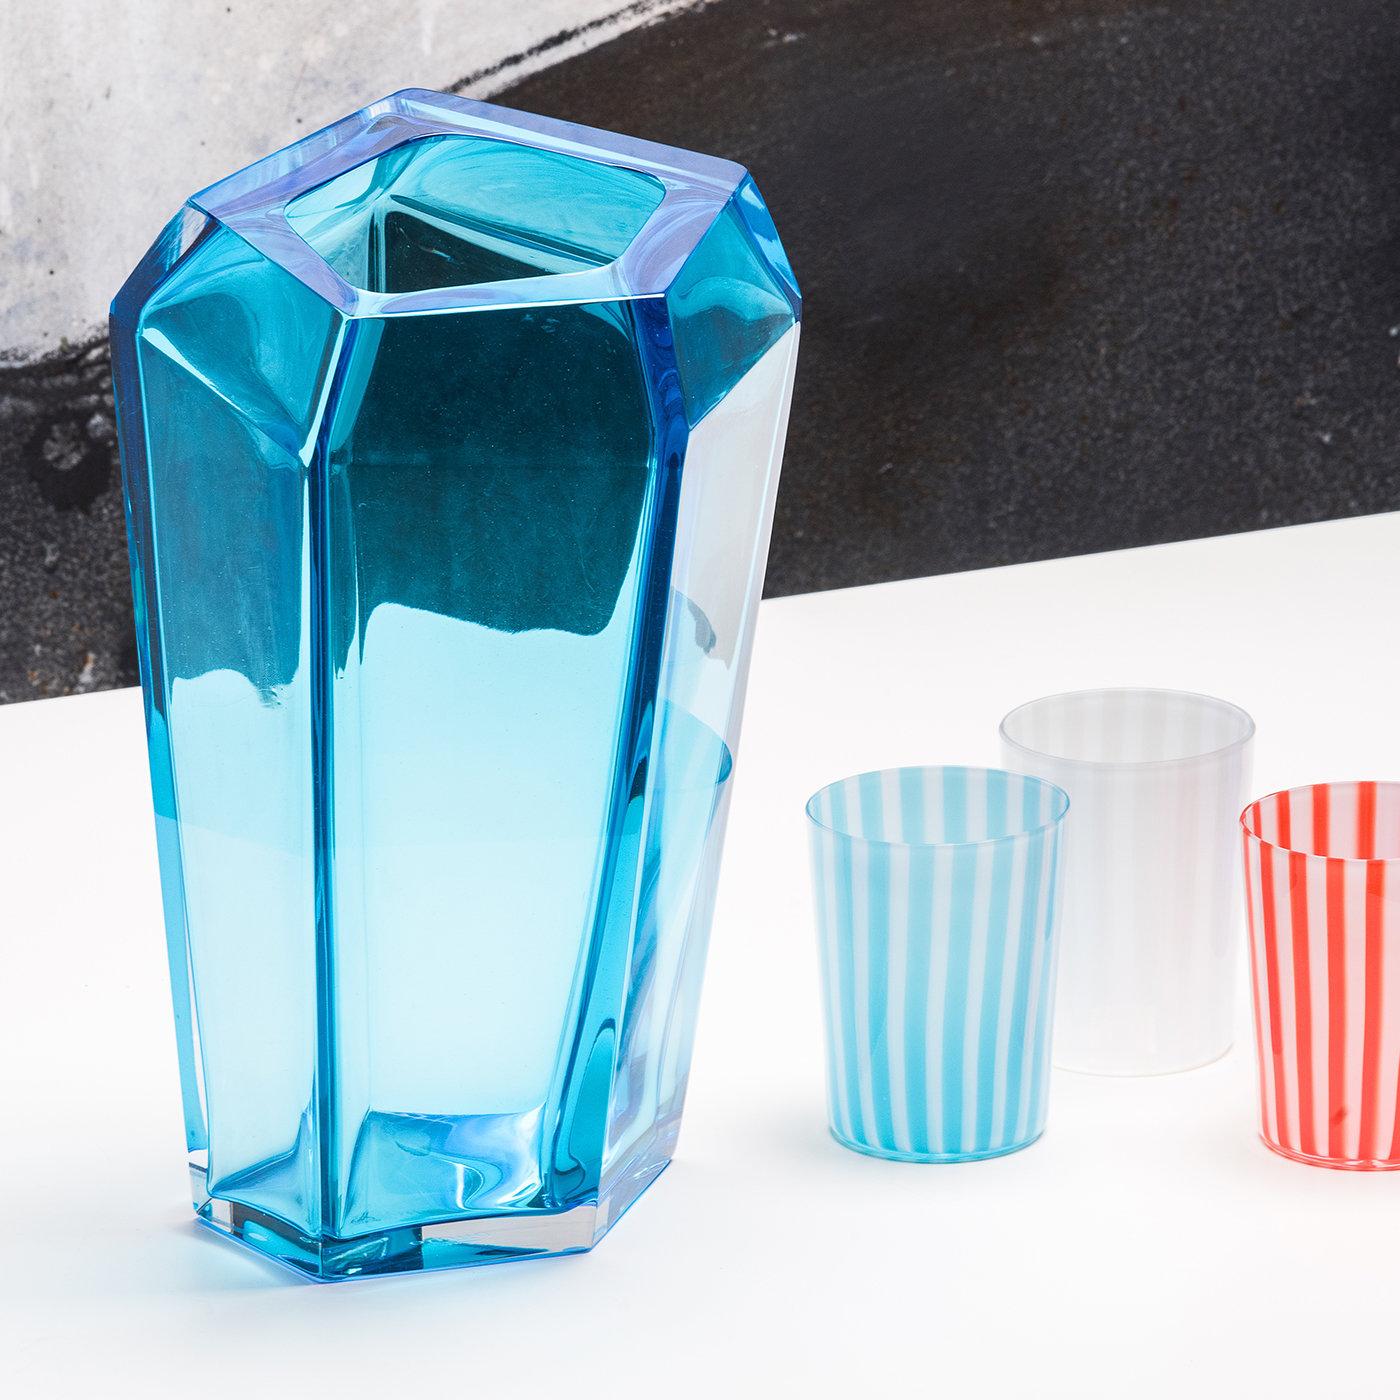 Ce vase élégant et moderne a été fabriqué en verre de Murano soufflé à la bouche et conçu par Karim Rashid dans le cadre d'une série de pièces qui associent une sensibilité contemporaine au savoir-faire artisanal exquis du verre de Murano soufflé à